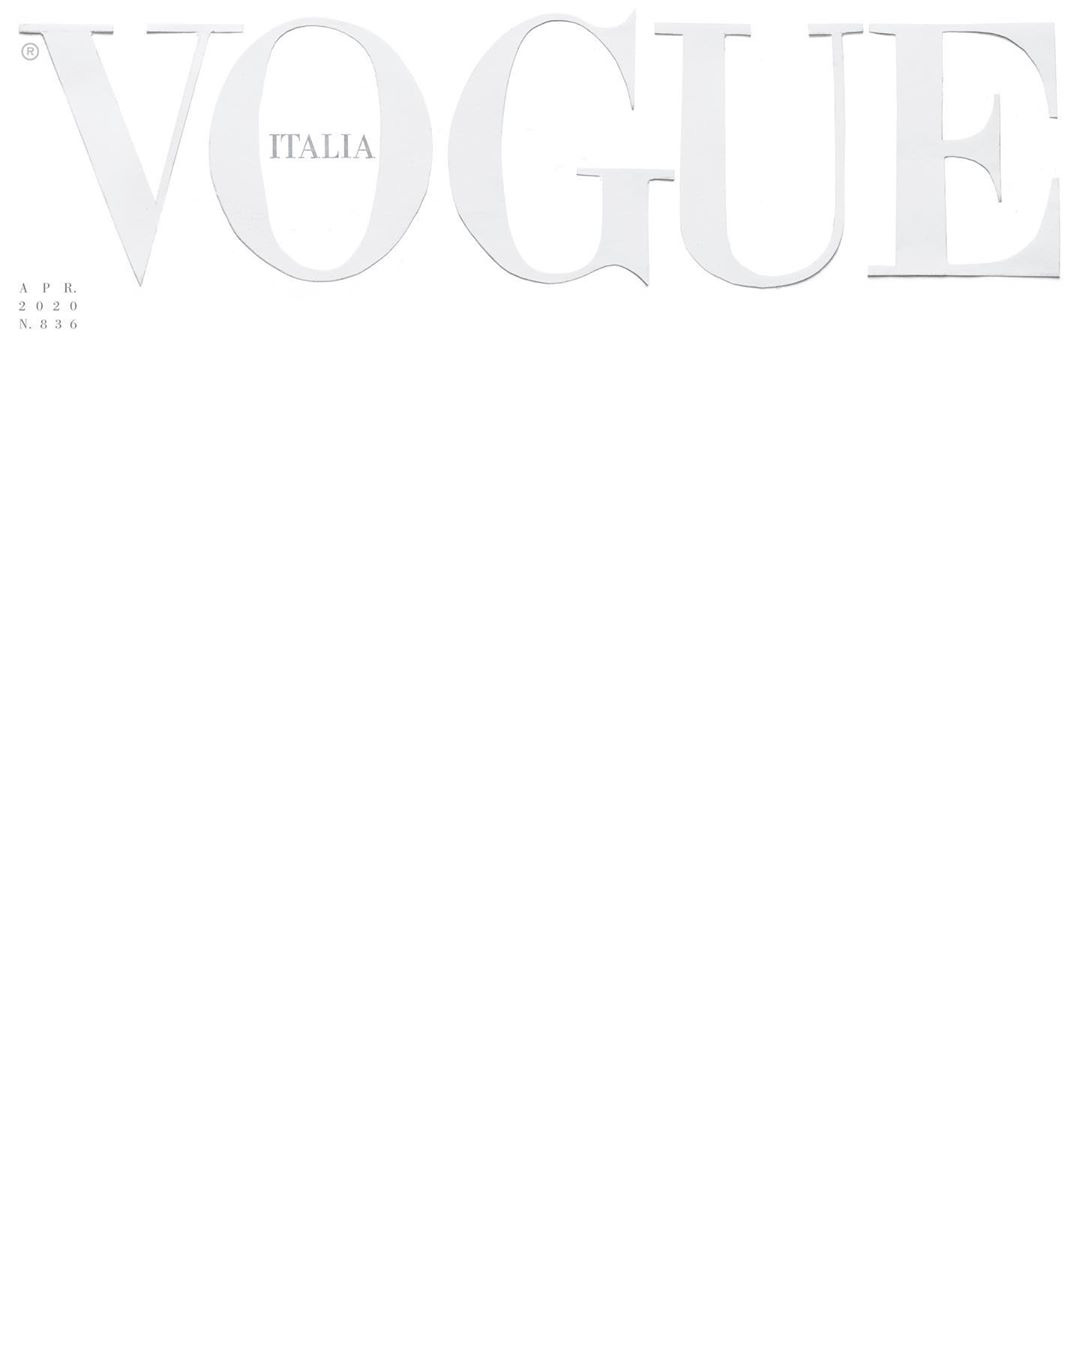 Tạp chí Vogue Ý: Hãy đến với tạp chí thời trang nổi tiếng Vogue Ý để khám phá những xu hướng thời trang mới nhất, xuất hiện trên thảm đỏ của các sự kiện danh giá. Bạn sẽ được chiêm ngưỡng những bản váy lộng lẫy của các nhà mốt hàng đầu và cập nhật kiến thức về làm đẹp, phong cách sống sang trọng. Hãy cùng nhau tận hưởng khoảnh khắc tuyệt vời này.